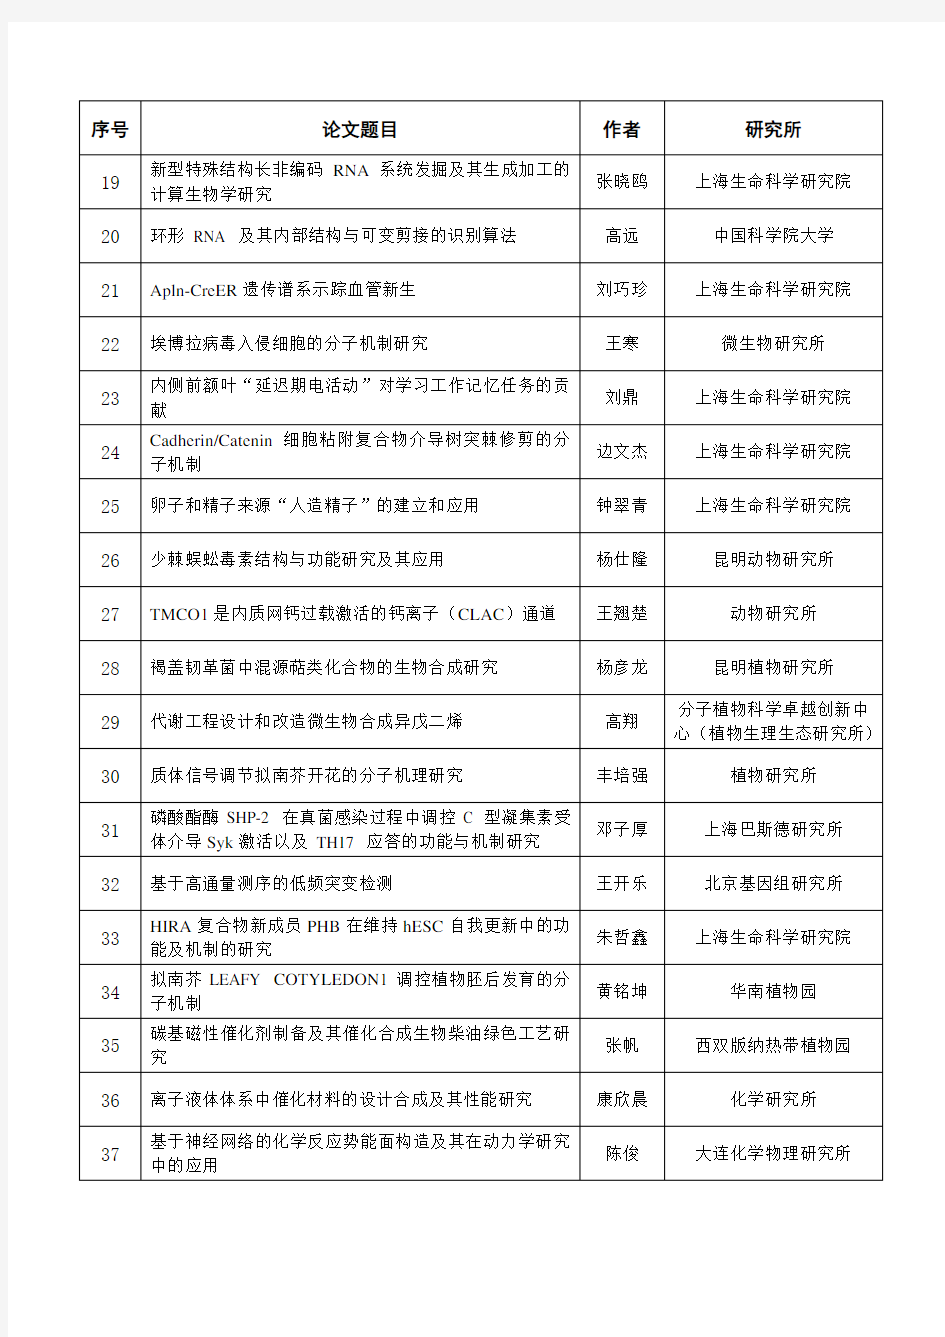 中国科学院百篇优博名单